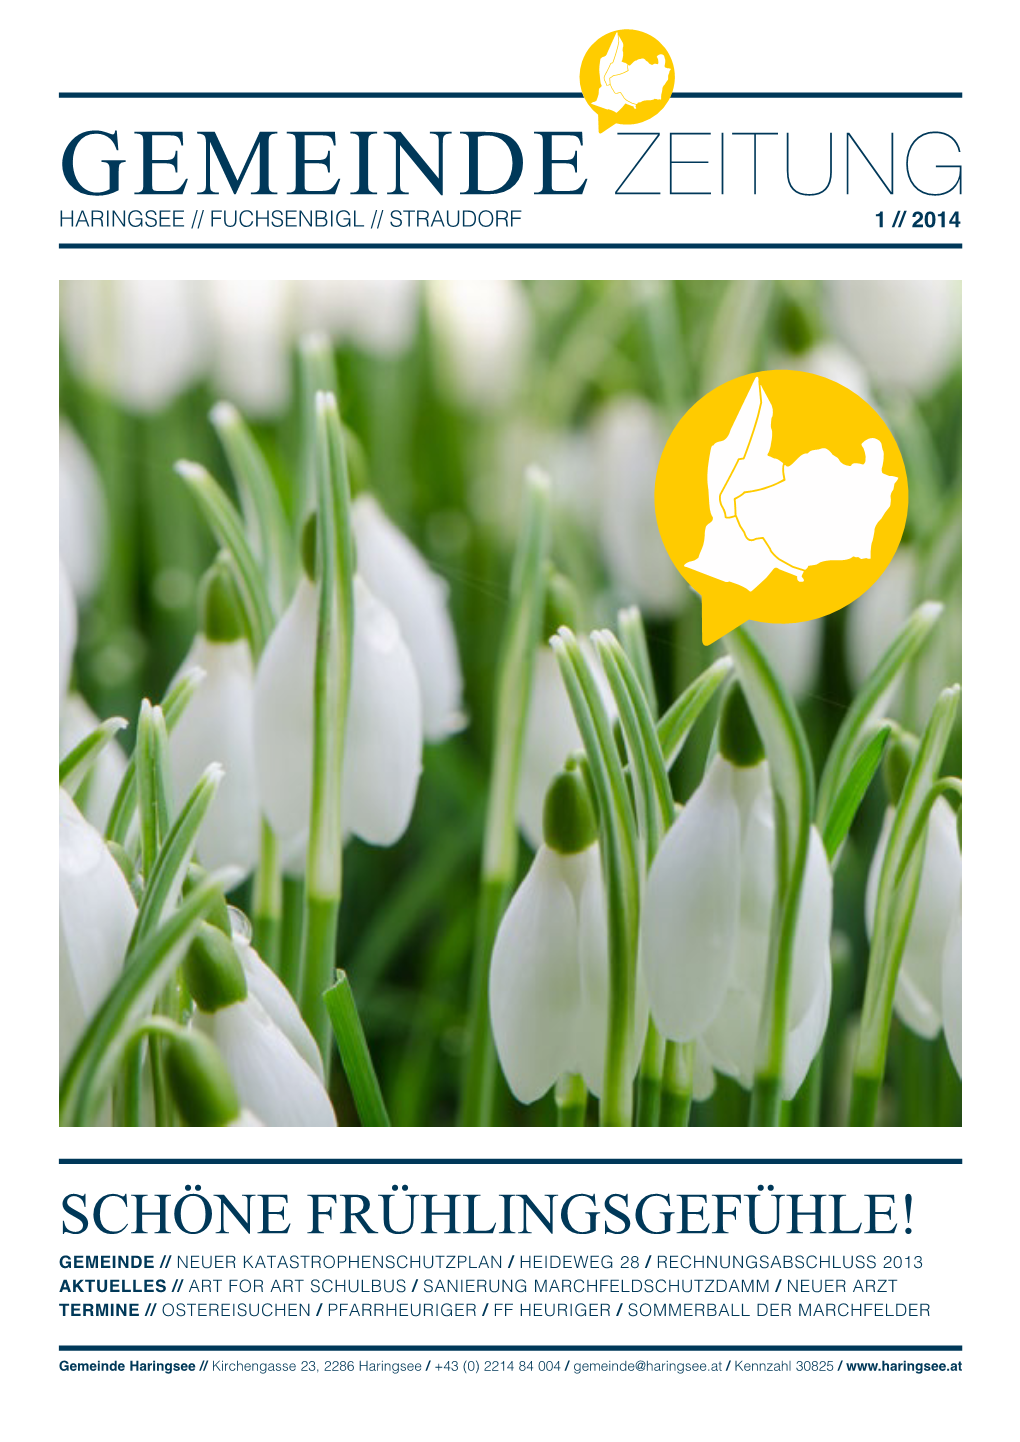 Gemeinde Zeitung Haringsee // Fuchsenbigl // Straudorf 1 // 2014